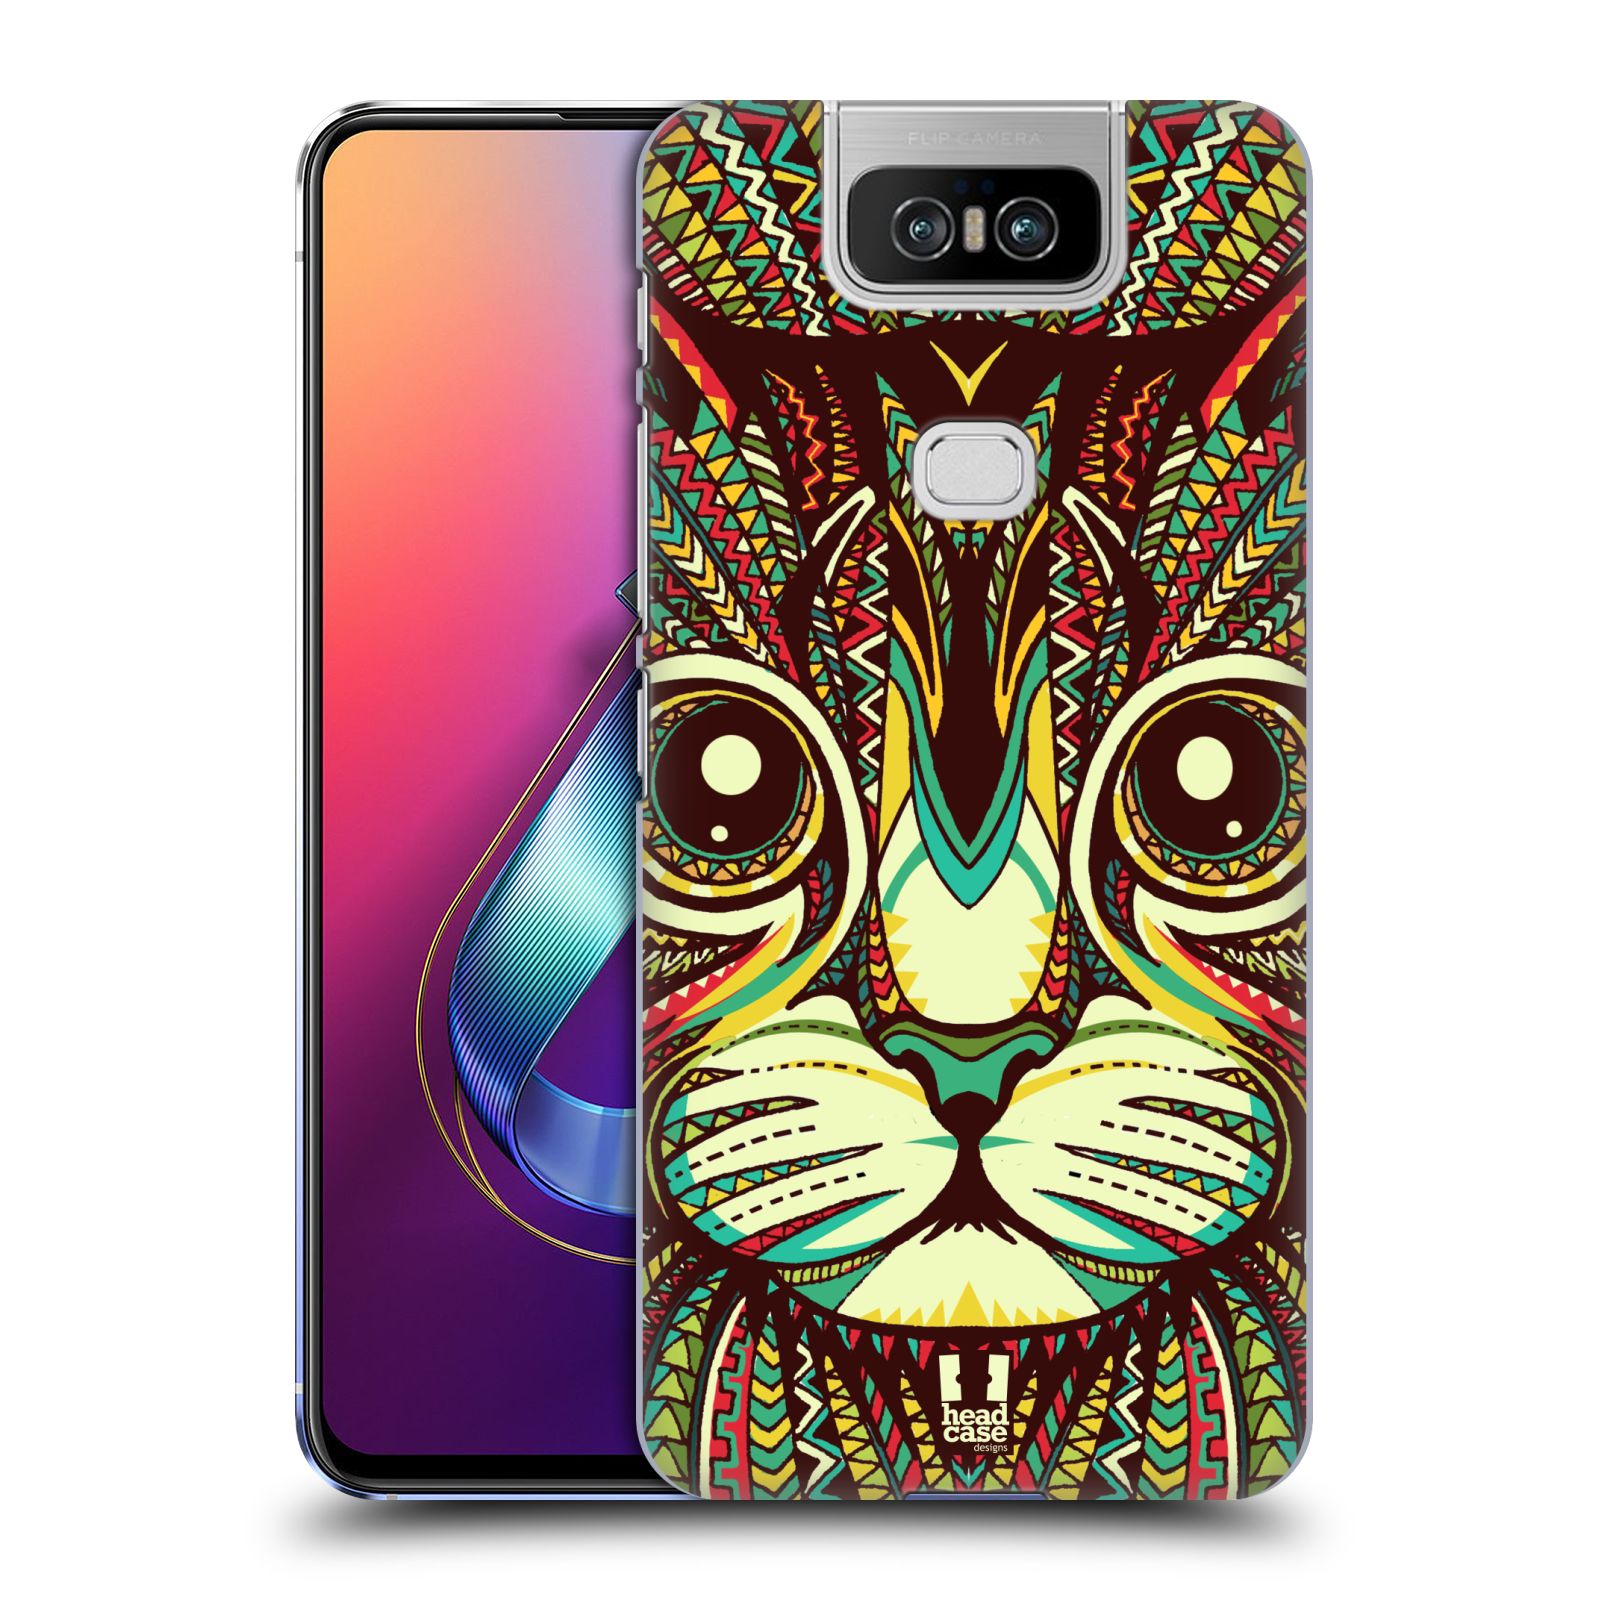 Pouzdro na mobil Asus Zenfone 6 ZS630KL - HEAD CASE - vzor Aztécký motiv zvíře 2 kotě